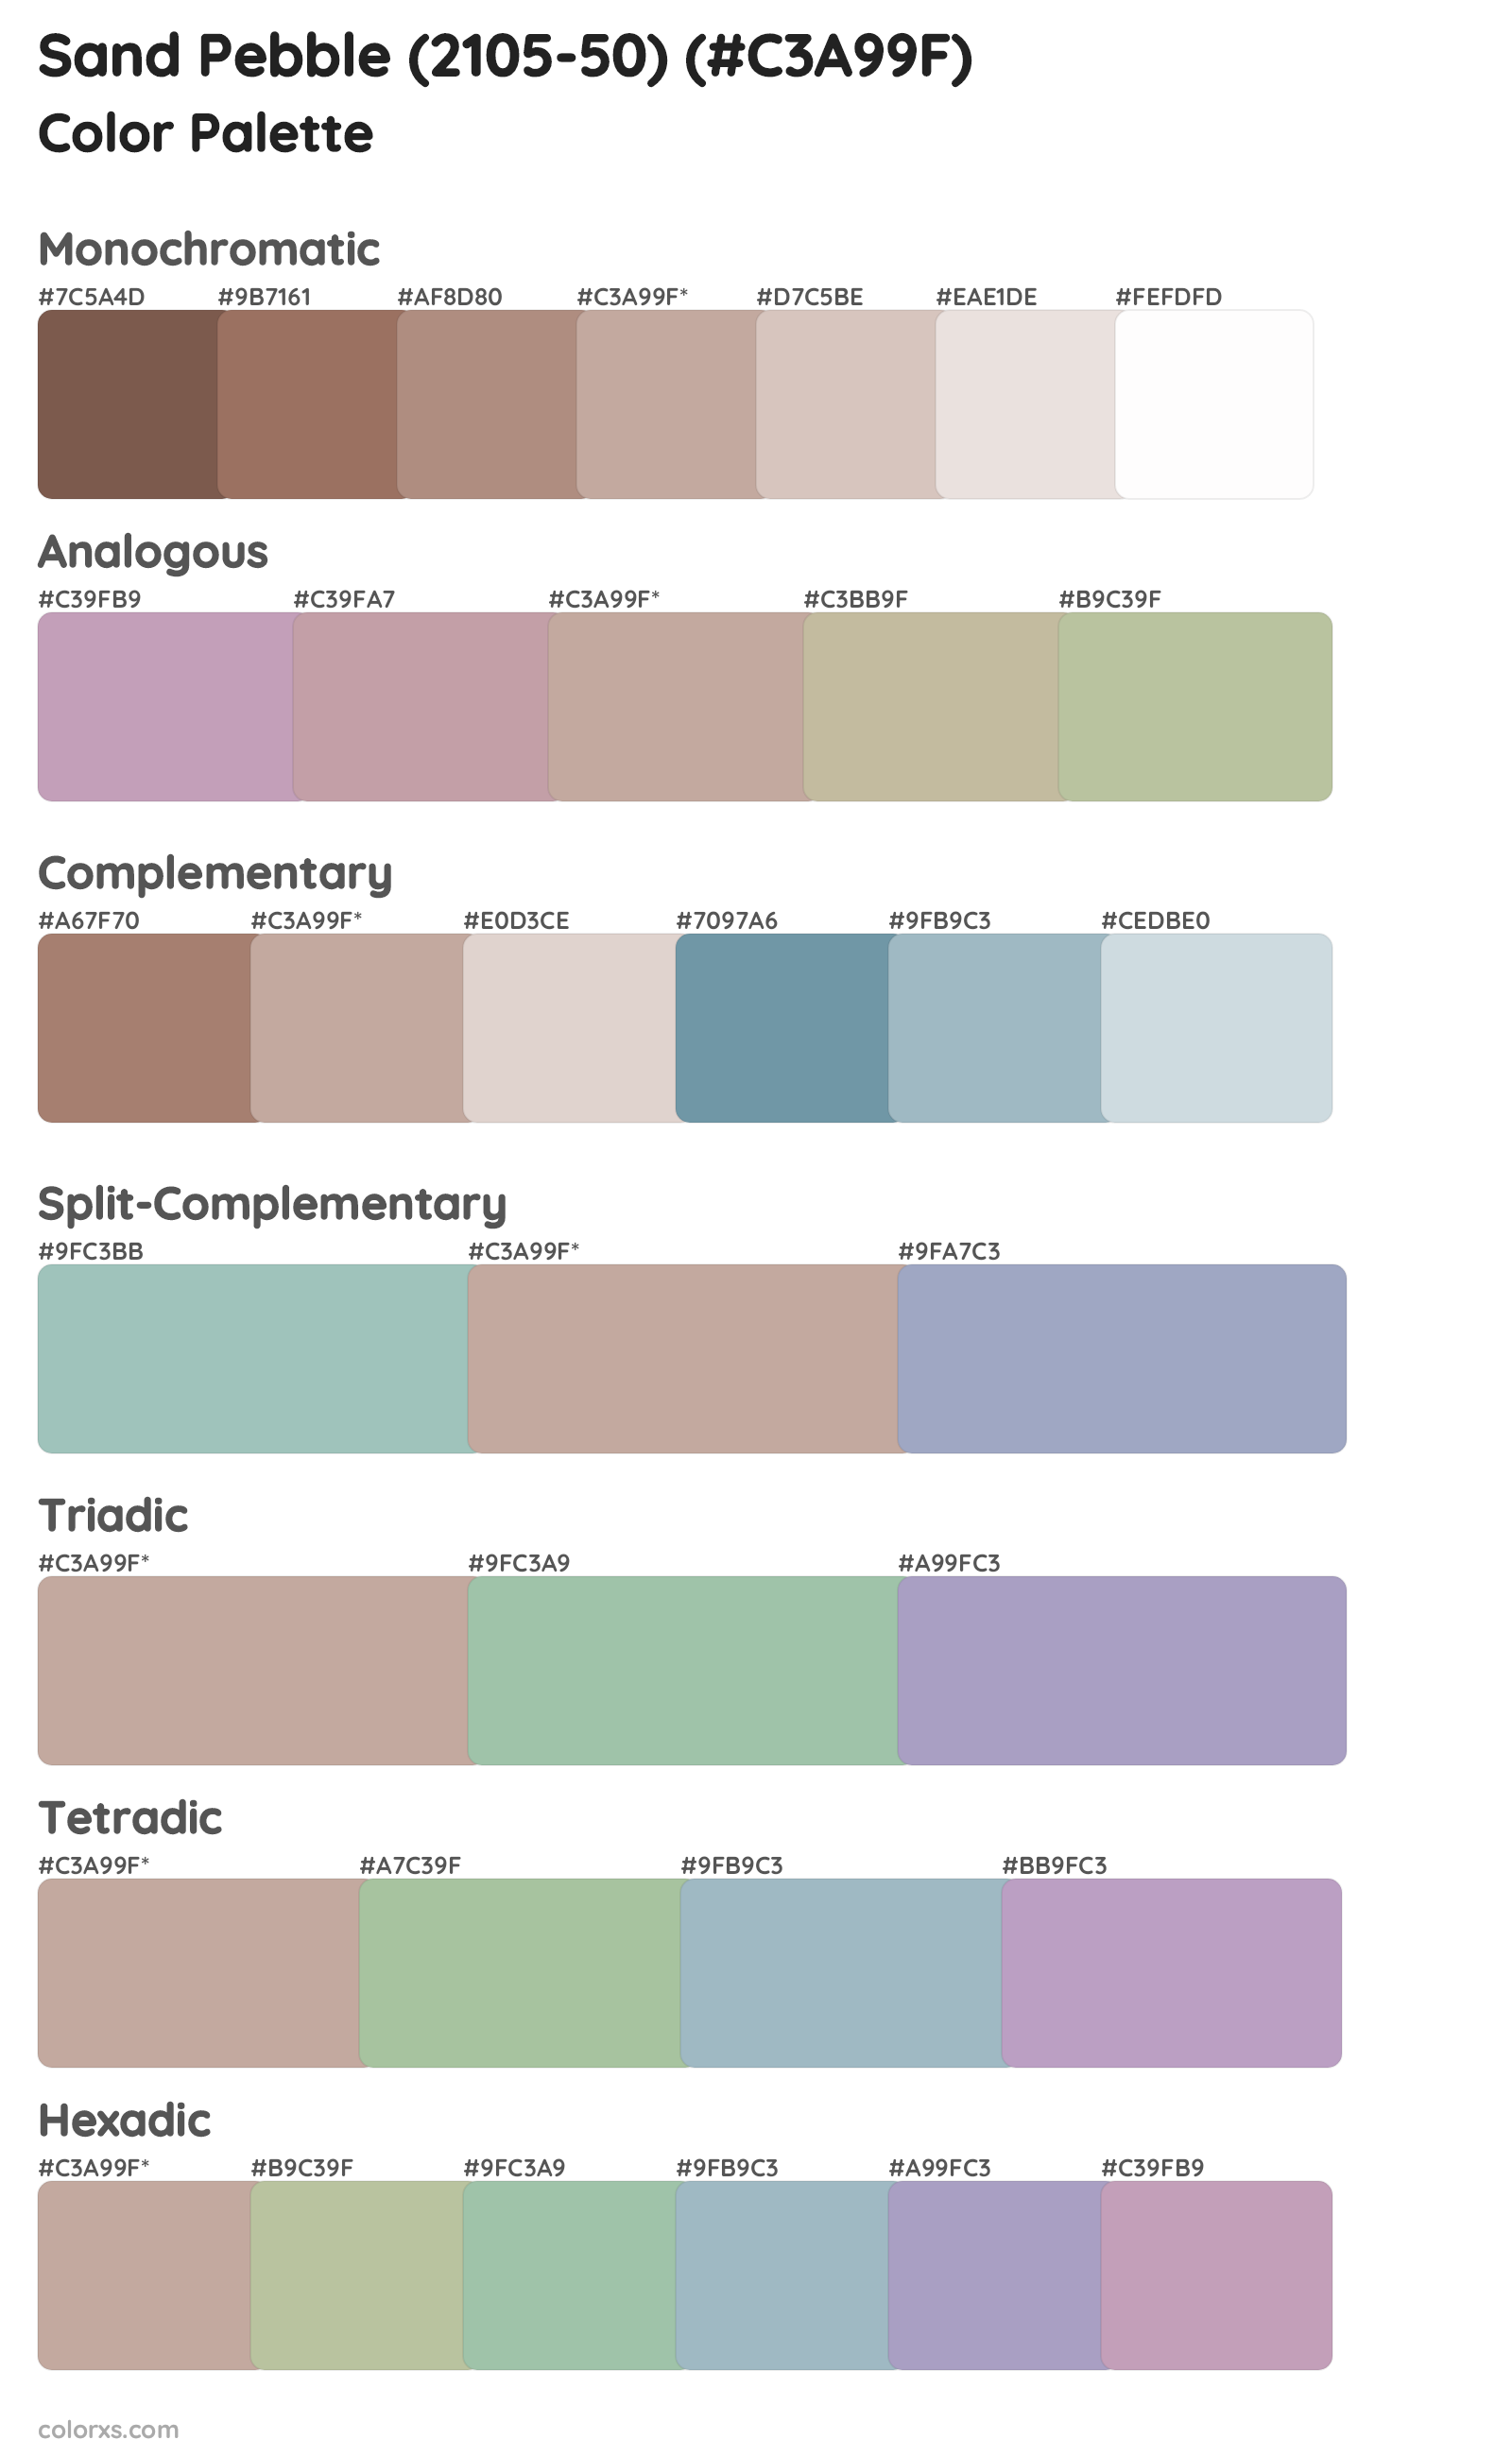 Sand Pebble (2105-50) Color Scheme Palettes